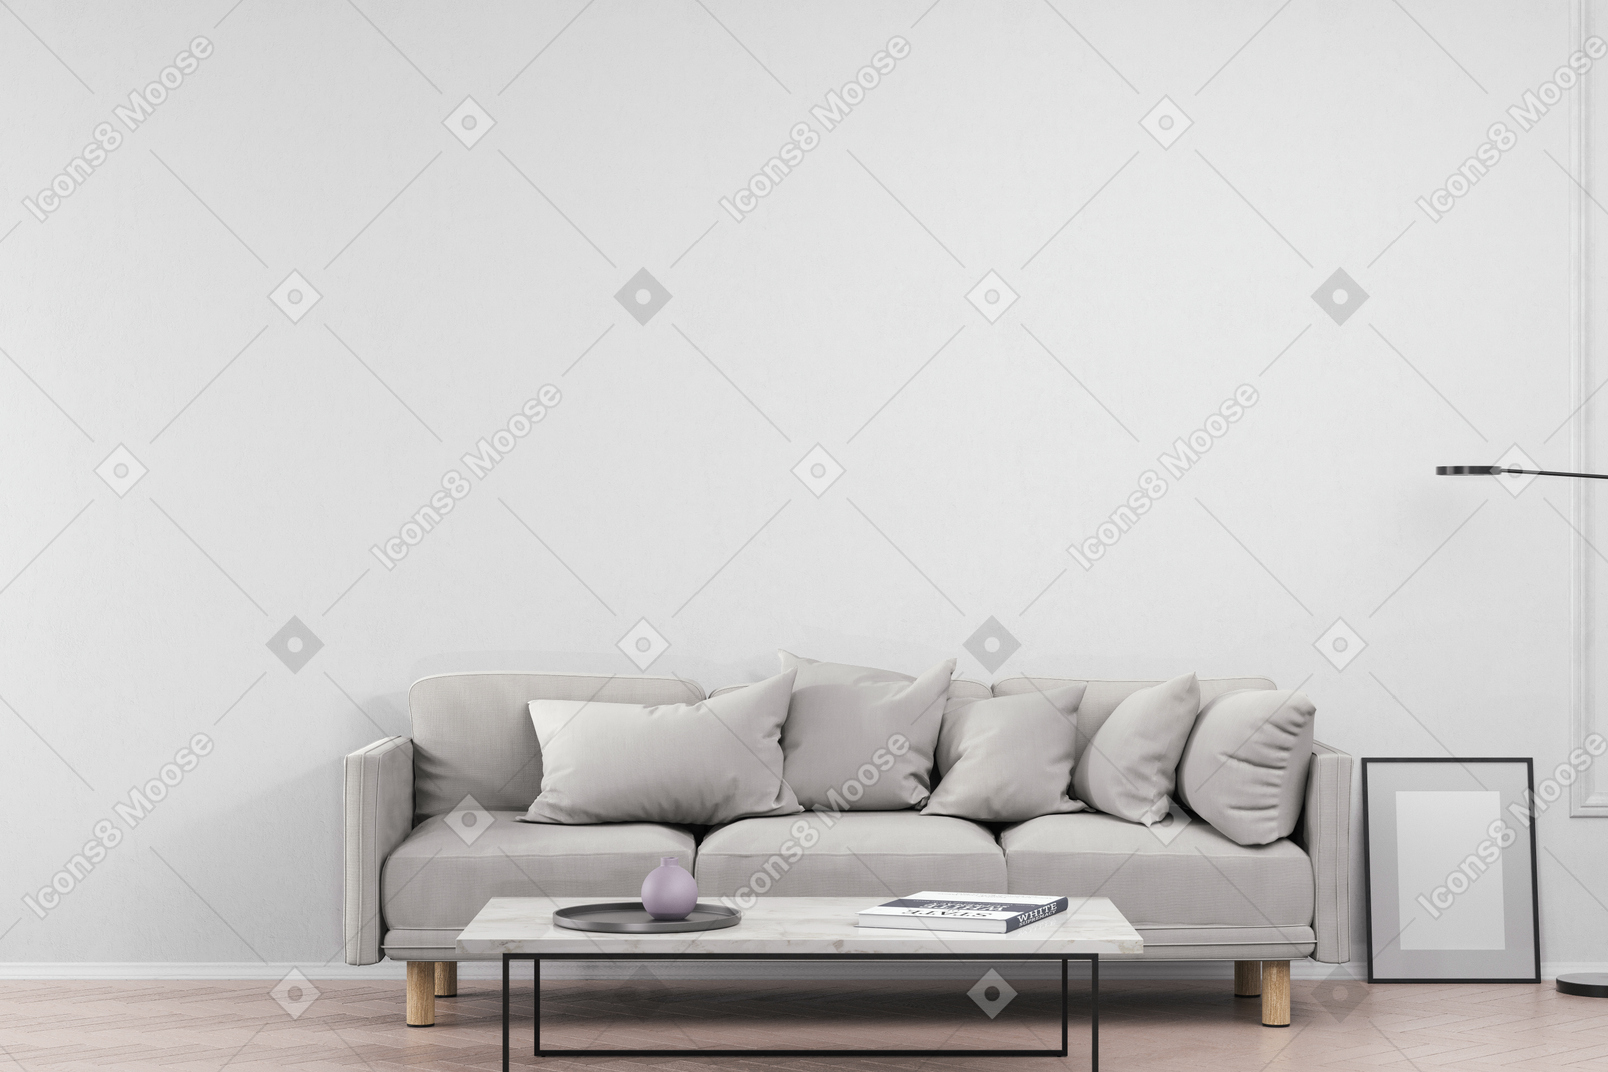 Wohnzimmer mit grauem sofa und couchtisch mit dekorationsgegenständen